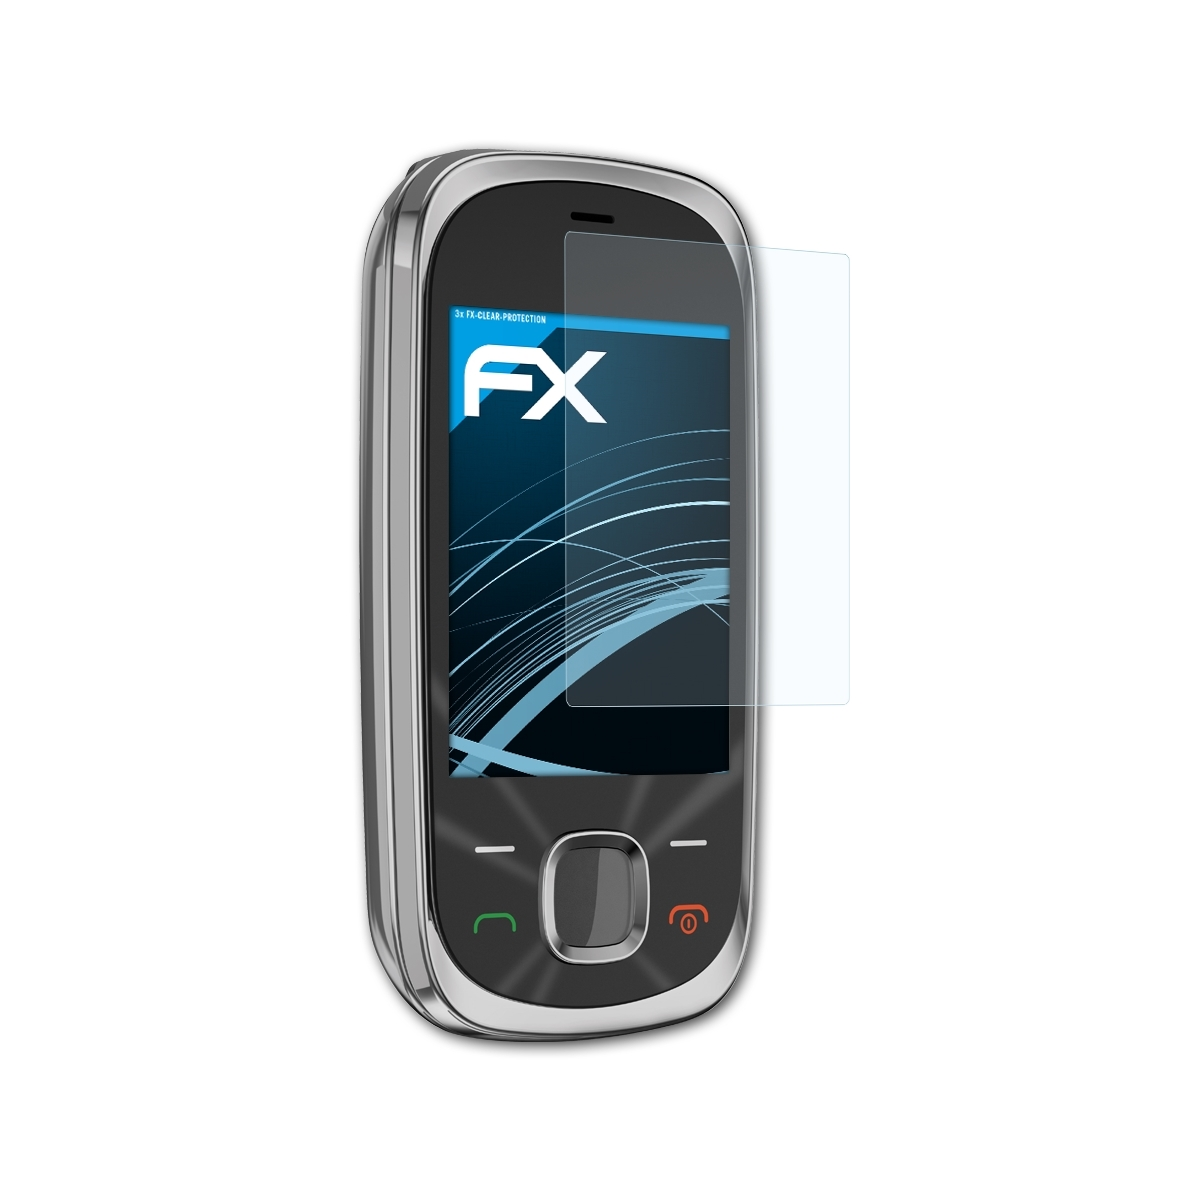 ATFOLIX 3x FX-Clear Displayschutz(für 7230) Nokia